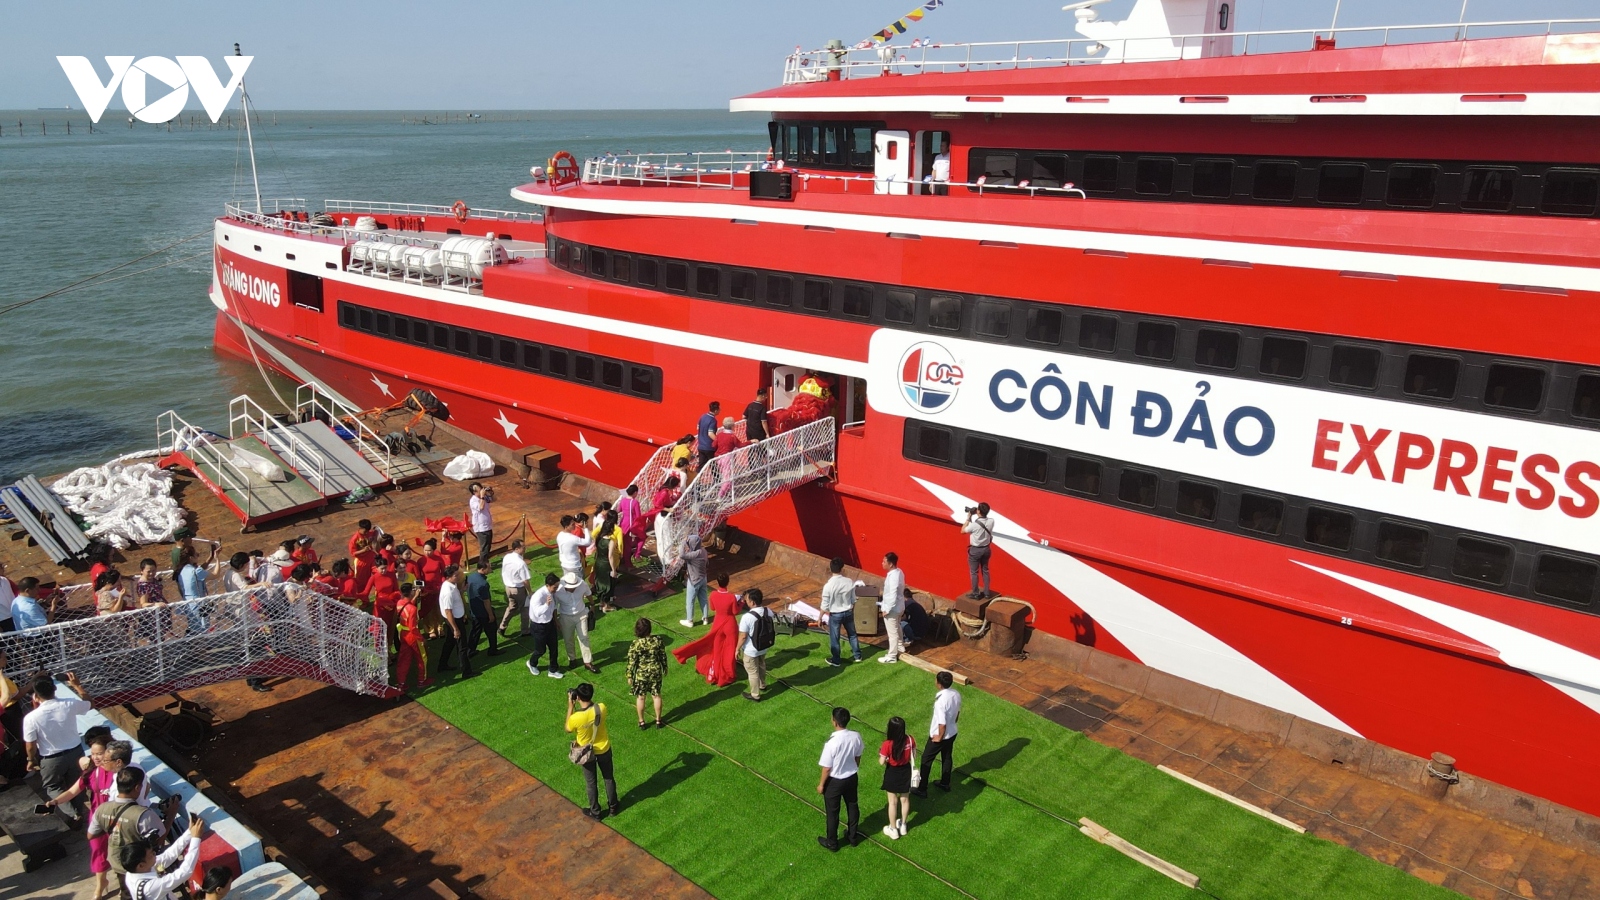 Ra mắt tàu cao tốc cỡ lớn đưa du khách đến Côn Đảo